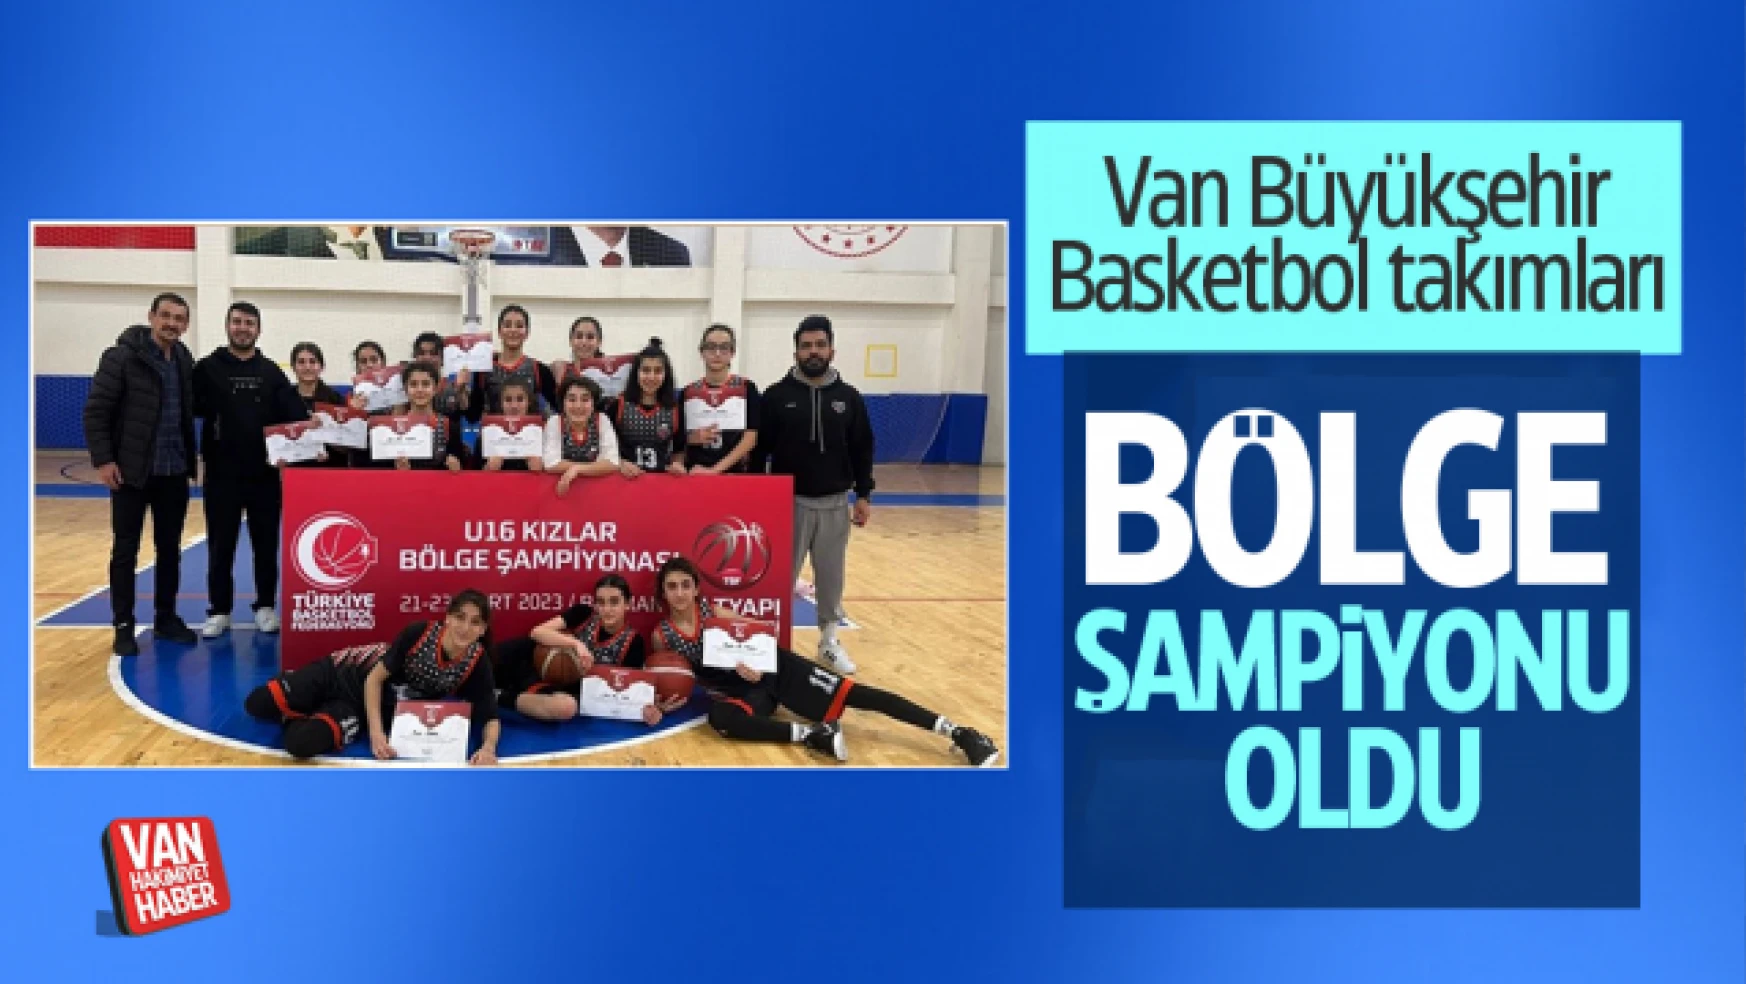 Van Büyükşehir Belediyesi basketbol takımı bölge şampiyonu oldu